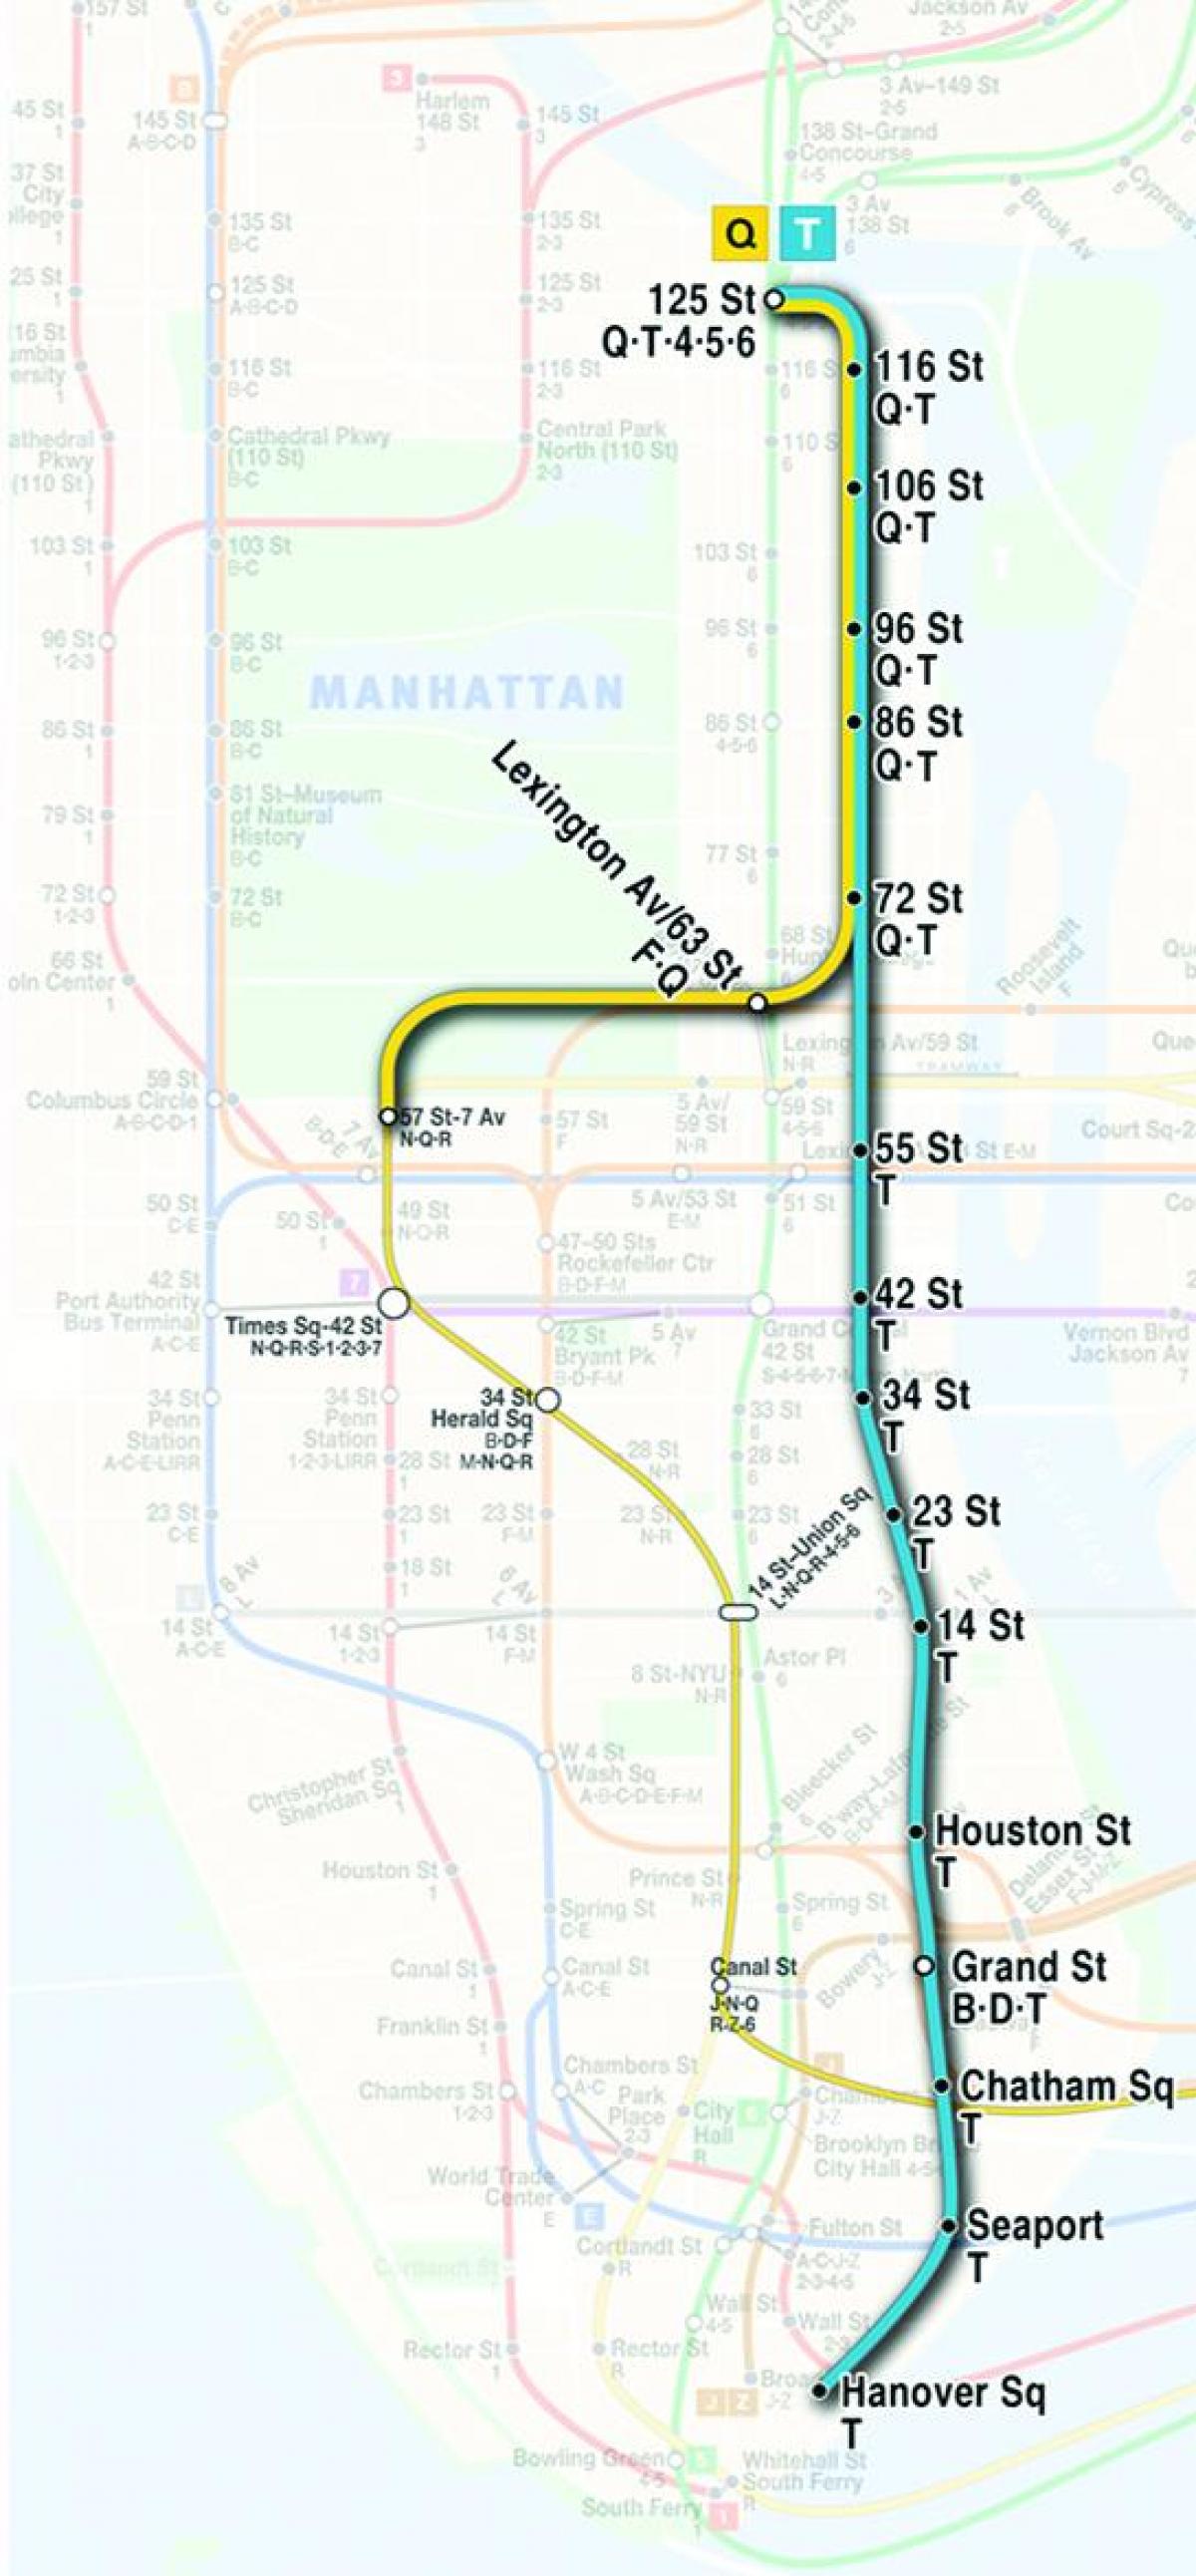 карта метро другој авенији